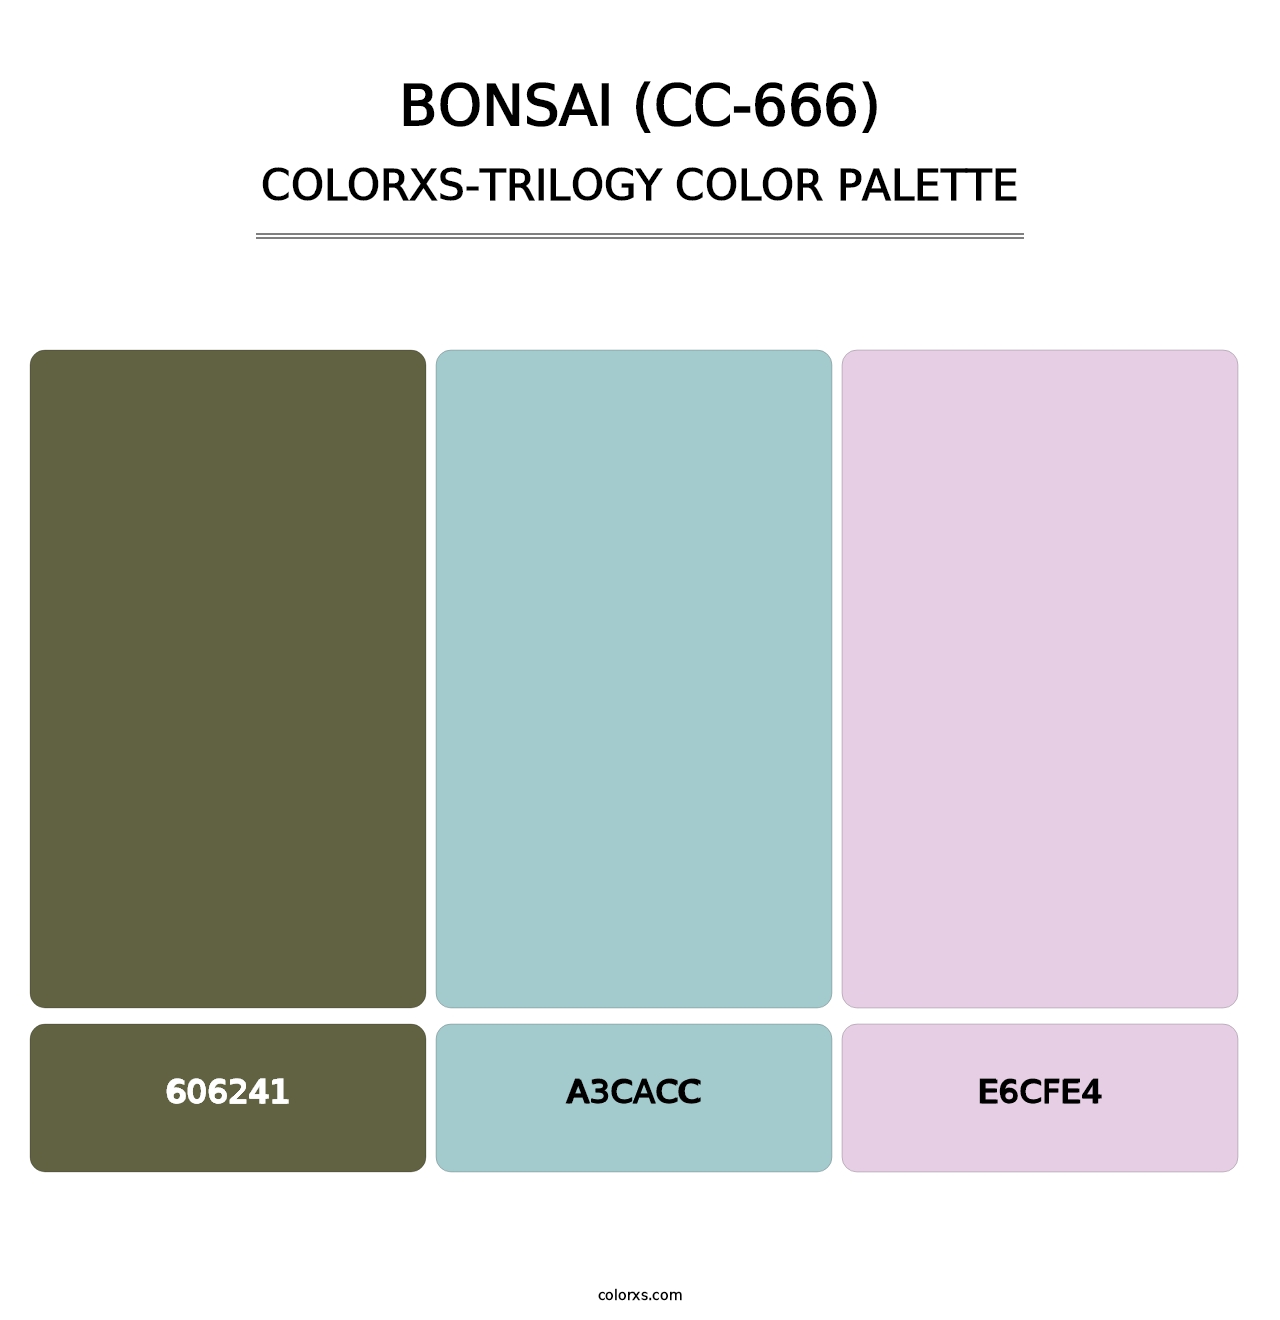 Bonsai (CC-666) - Colorxs Trilogy Palette